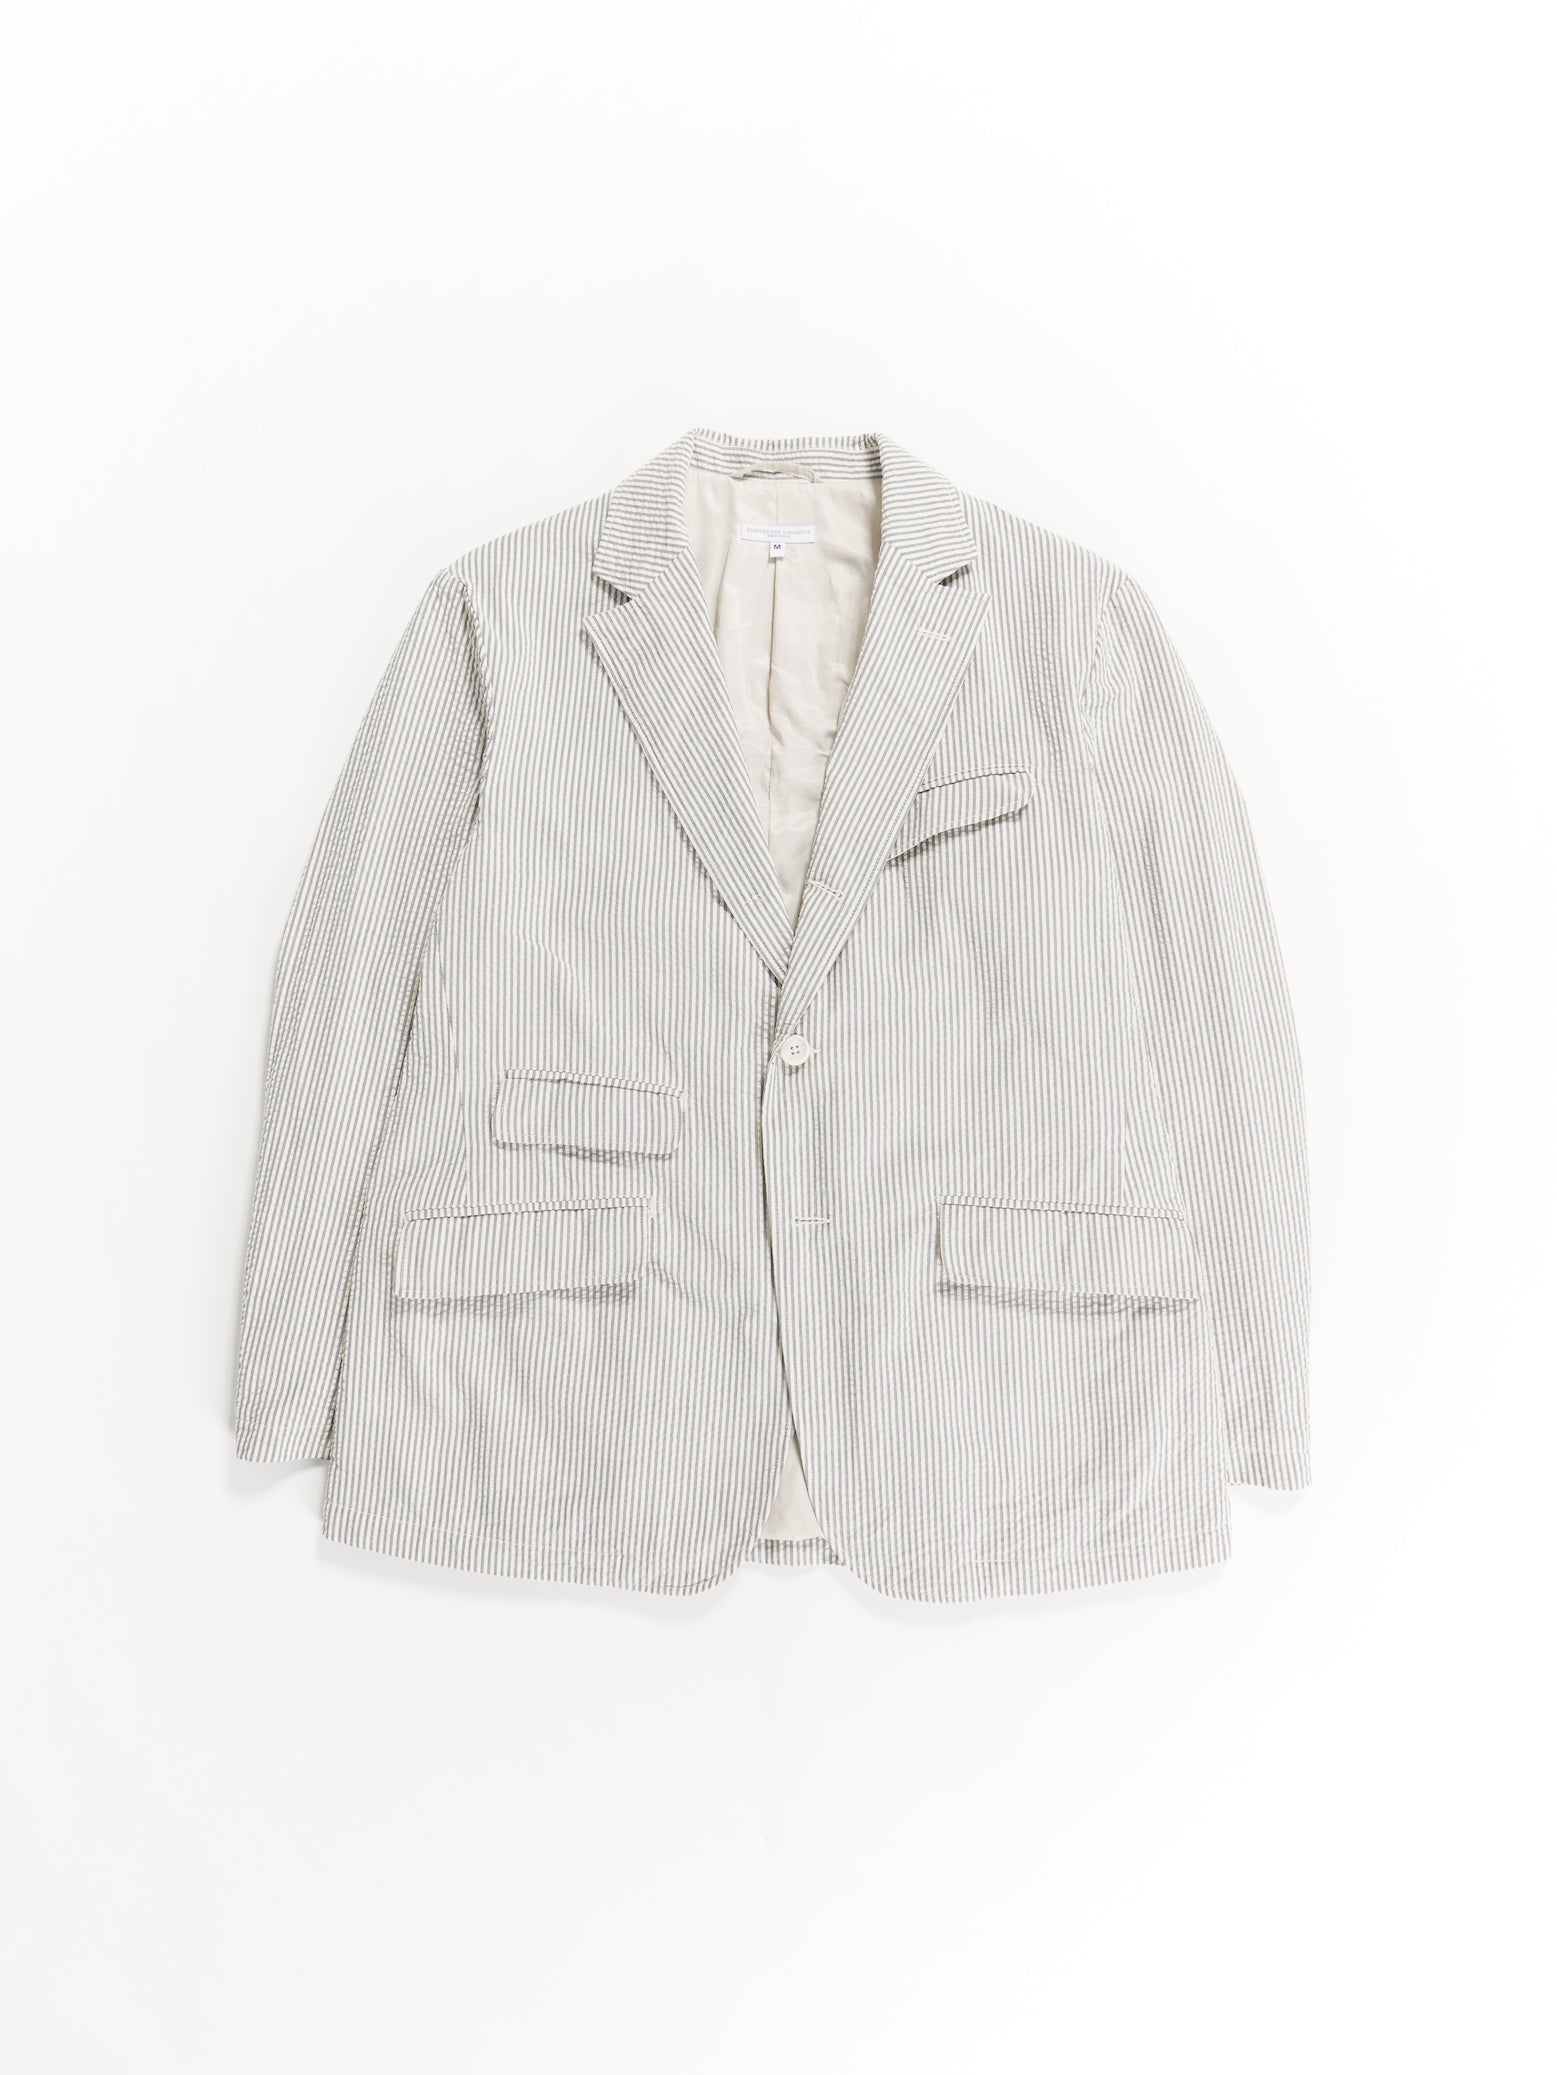 Andover Jacket - Navy / Natural Cotton Seersucker